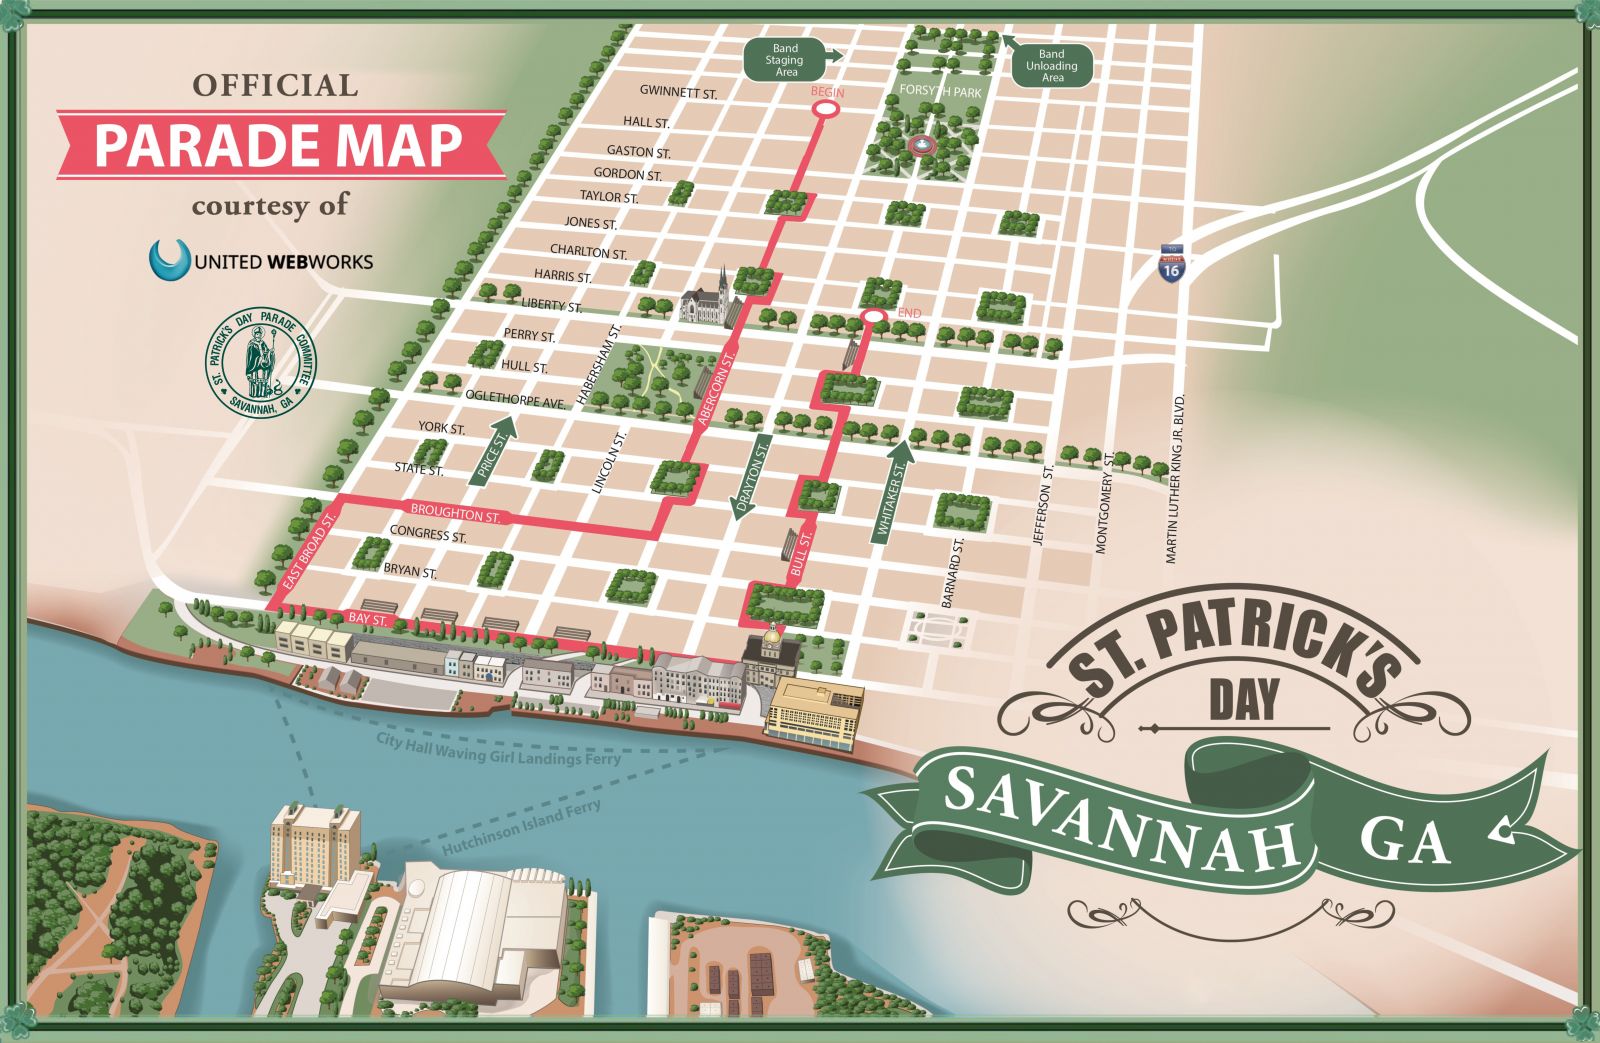 St. Patrick's Day Savannah Parade Map